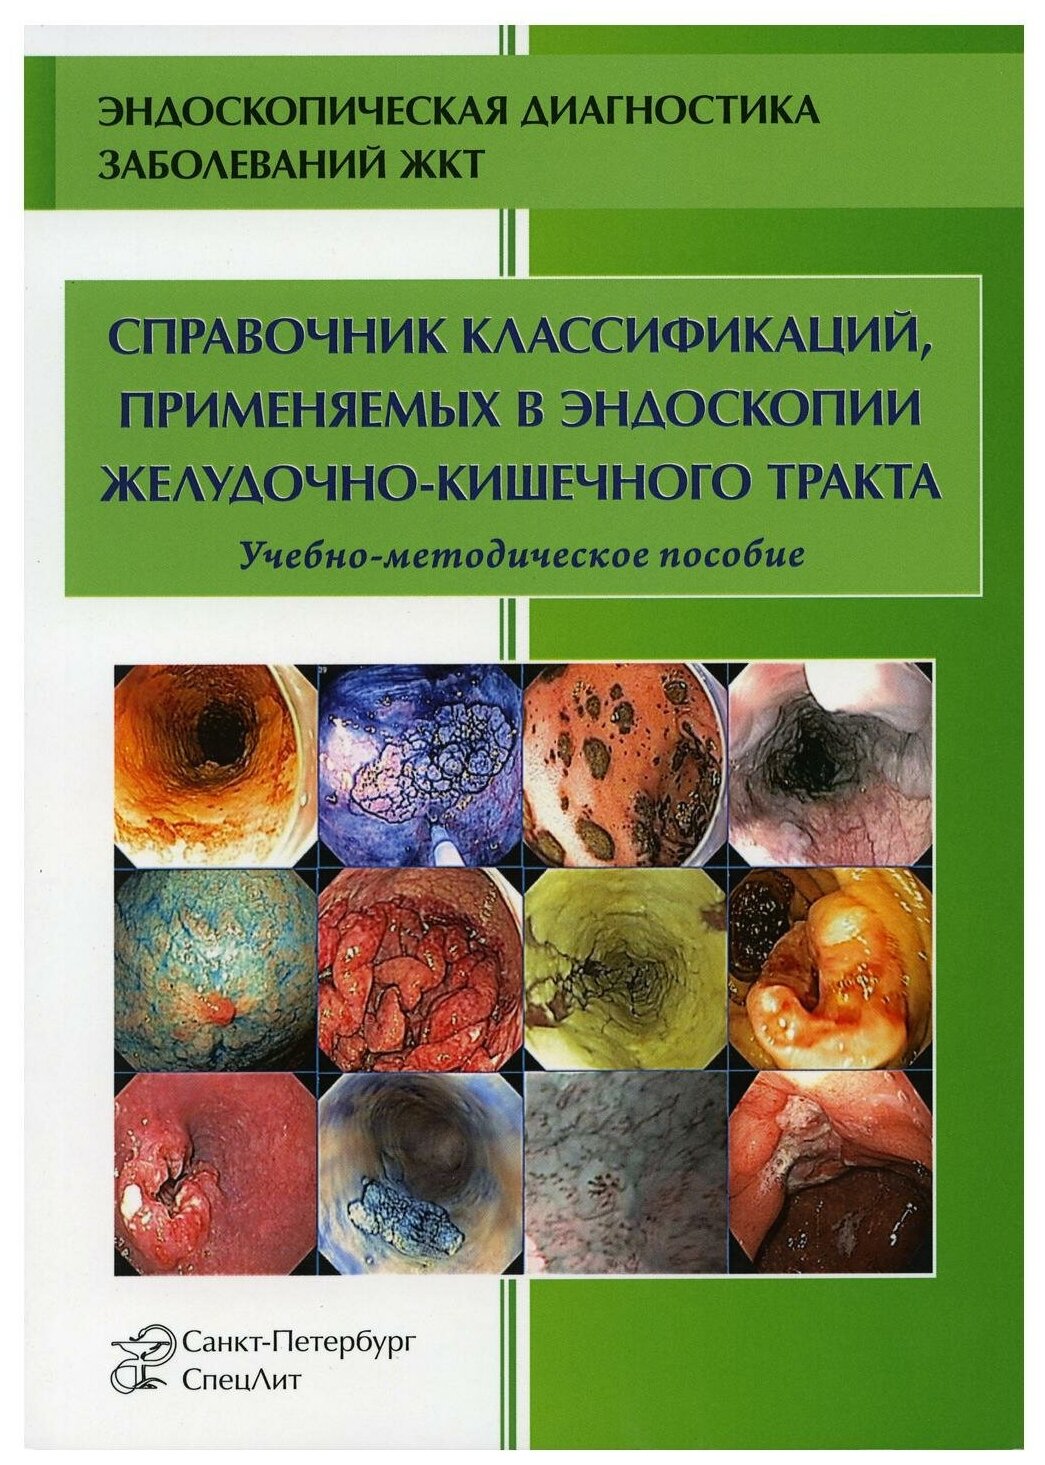 Справочник классификаций, применяемых в эндоскопии желудочно-кишечного тракта - фото №1